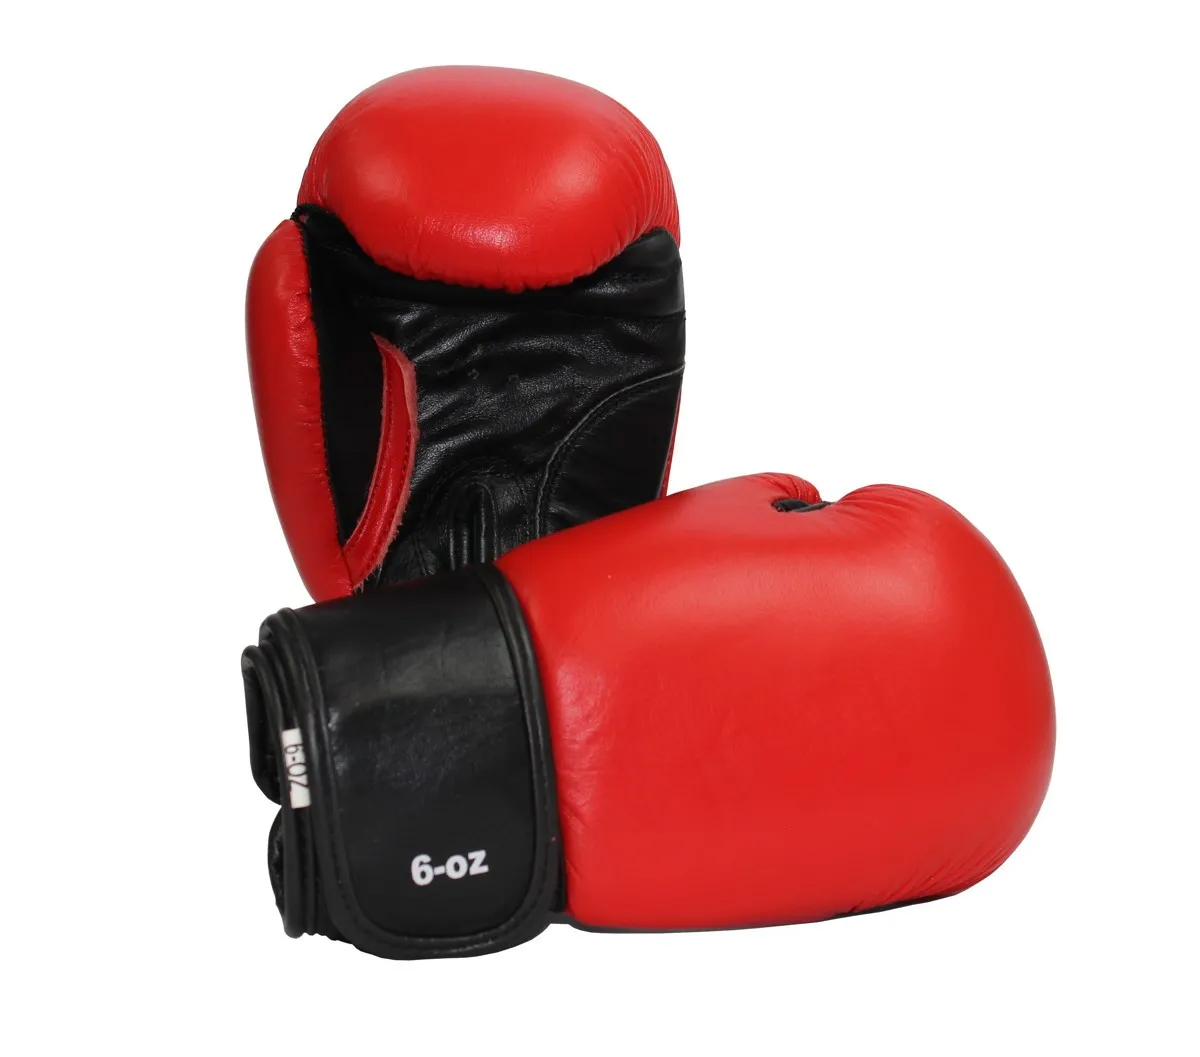 Boxing gloves for children 6 OZ